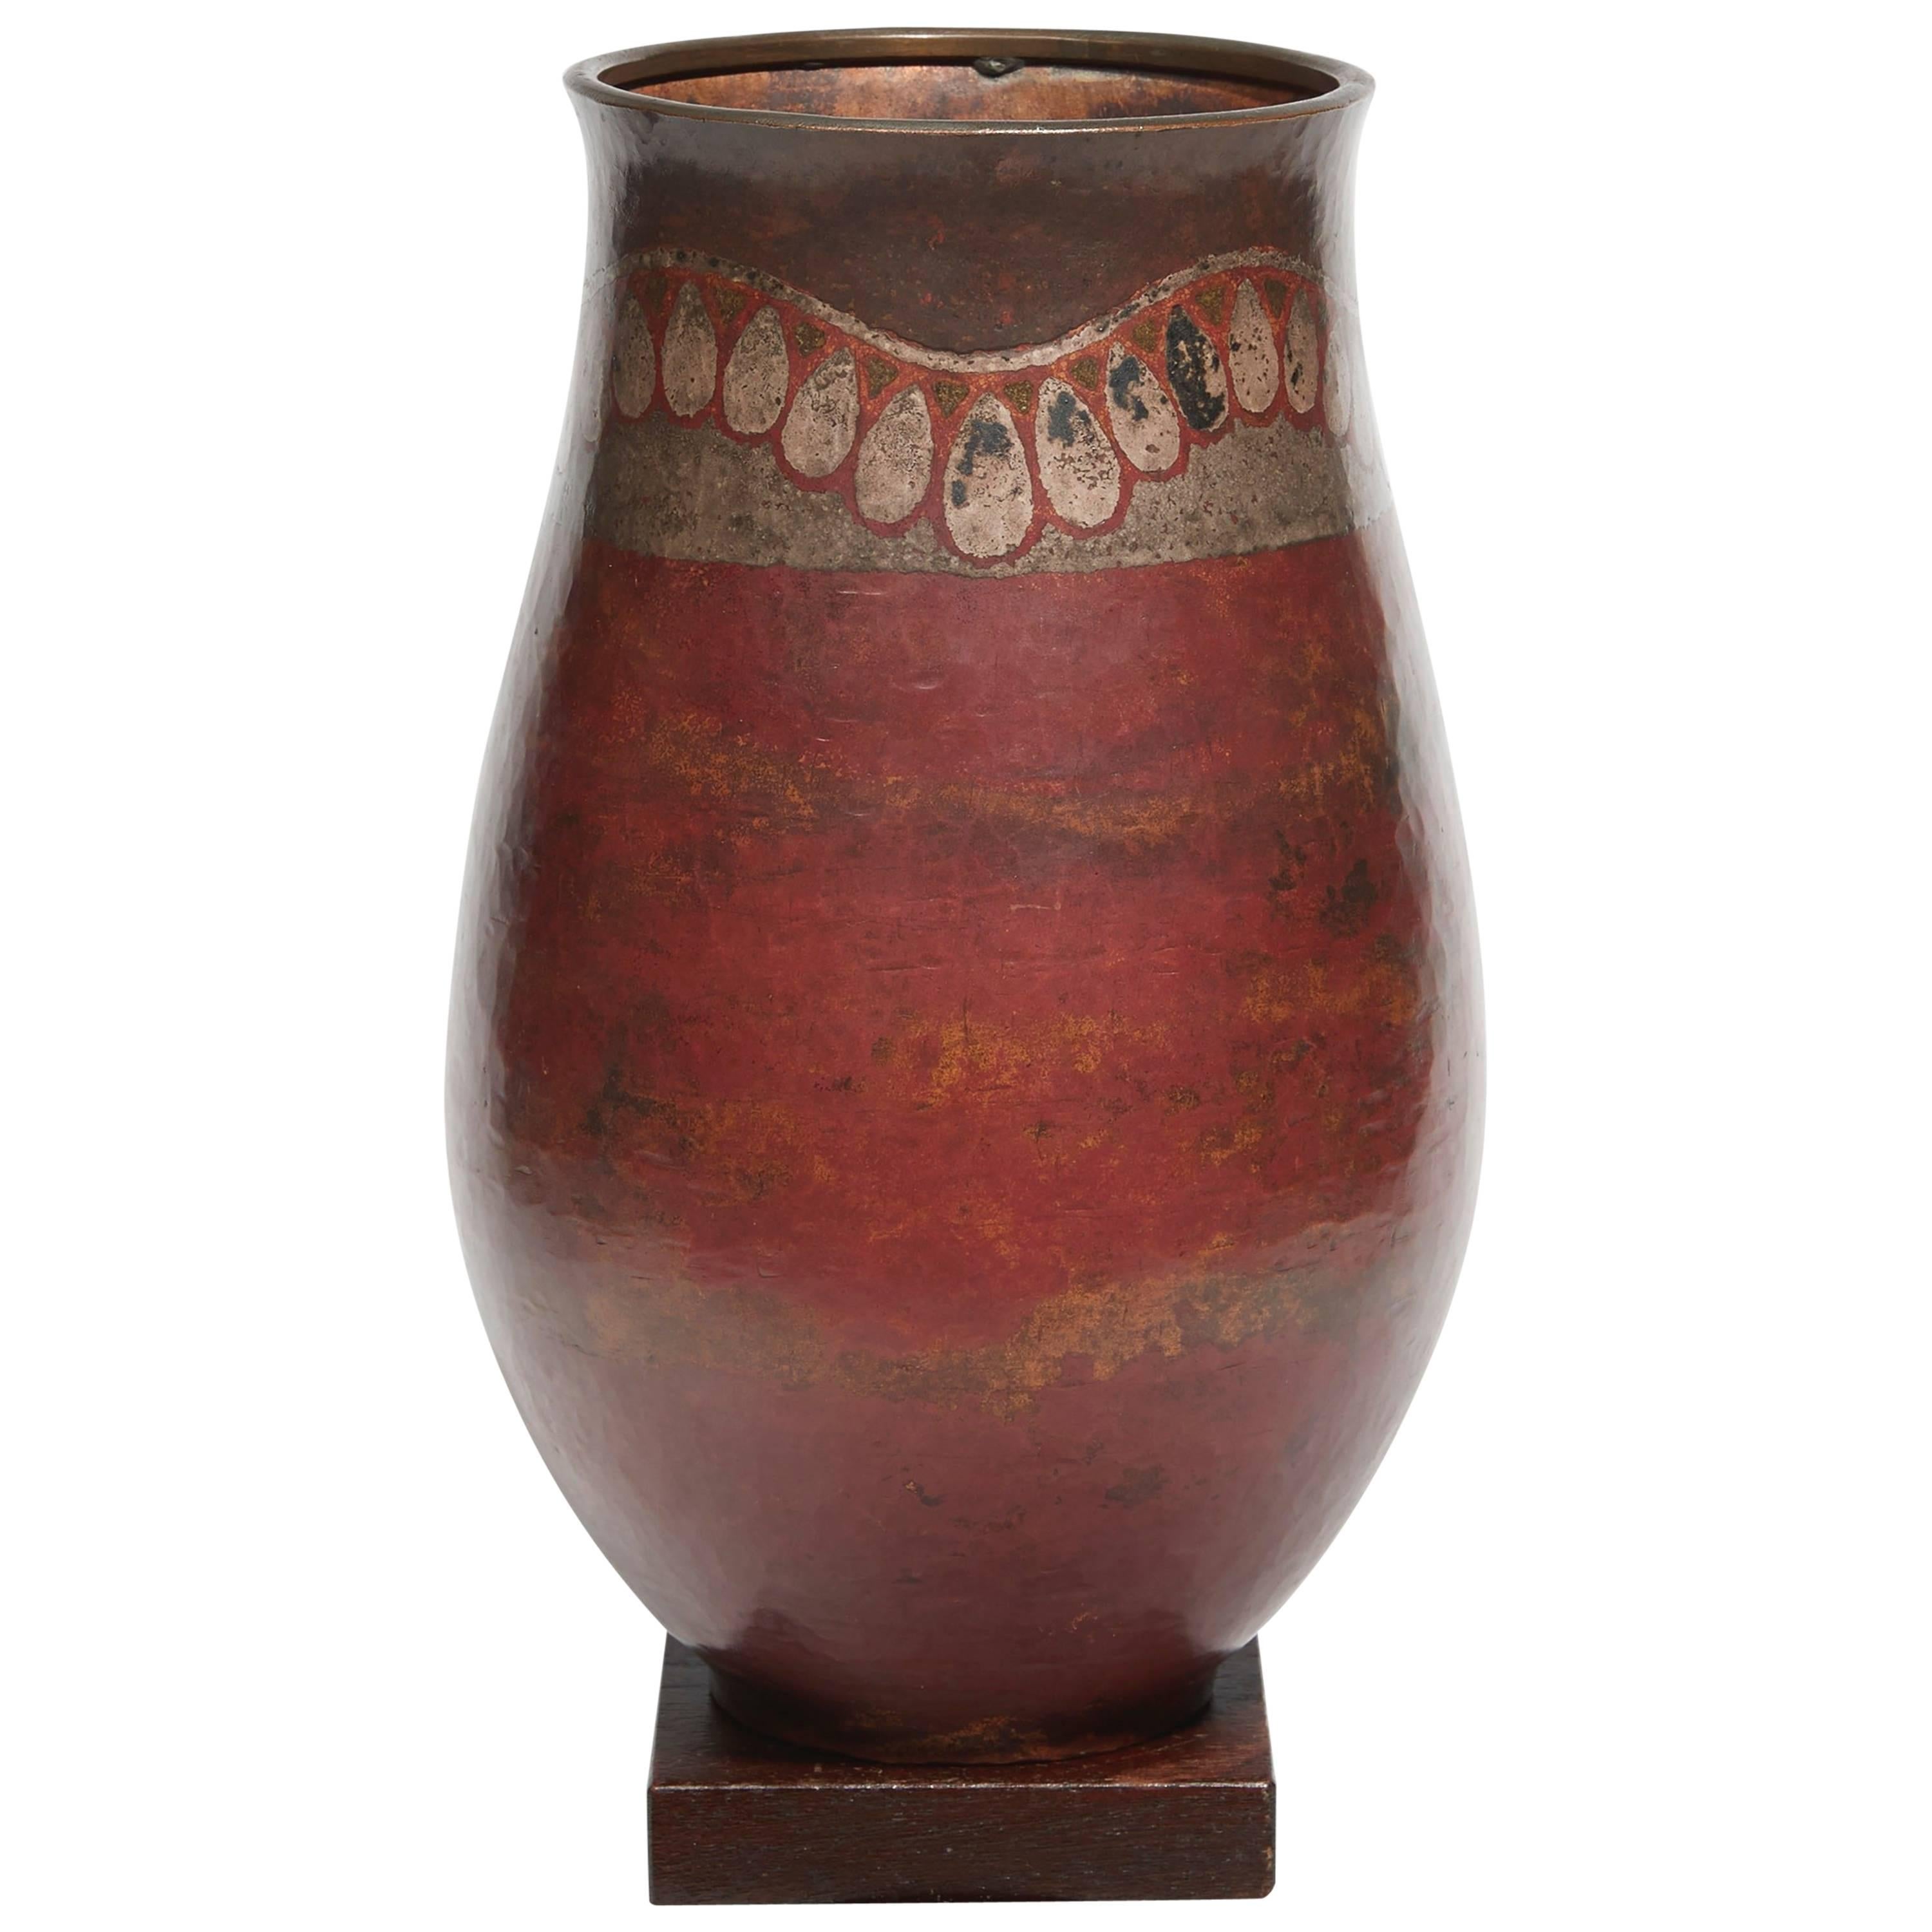 'Ondulation de pendeloque' Vase by Claudius Linossier, circa 1930